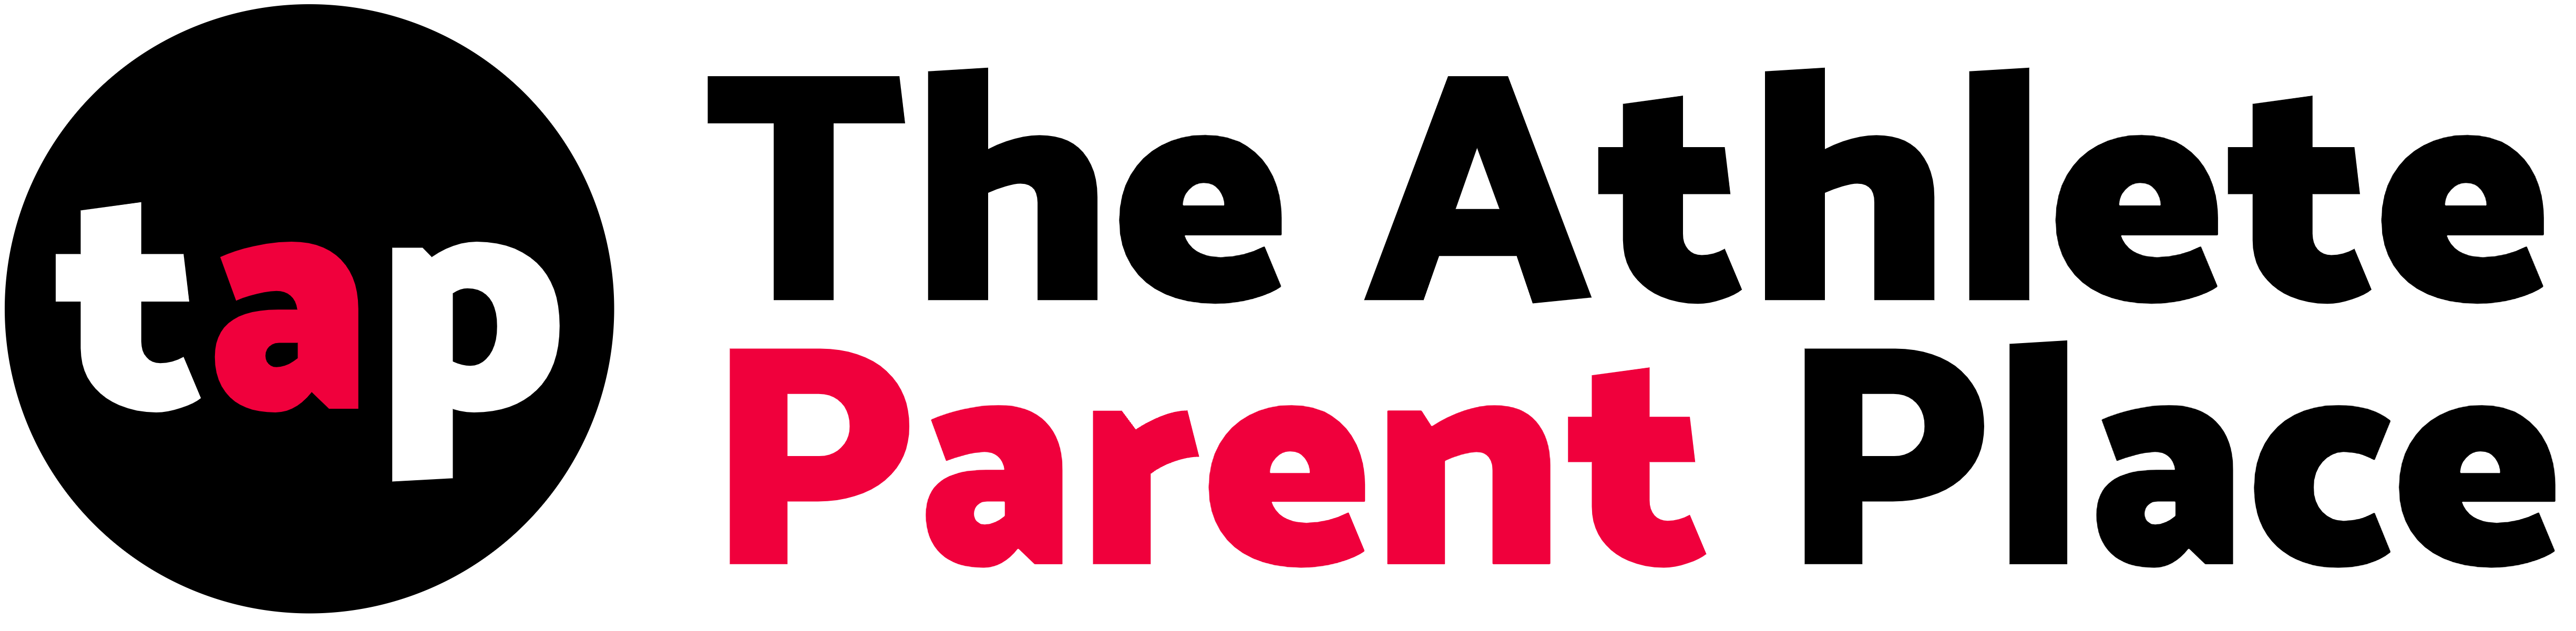 The Athlete Parent Place logo